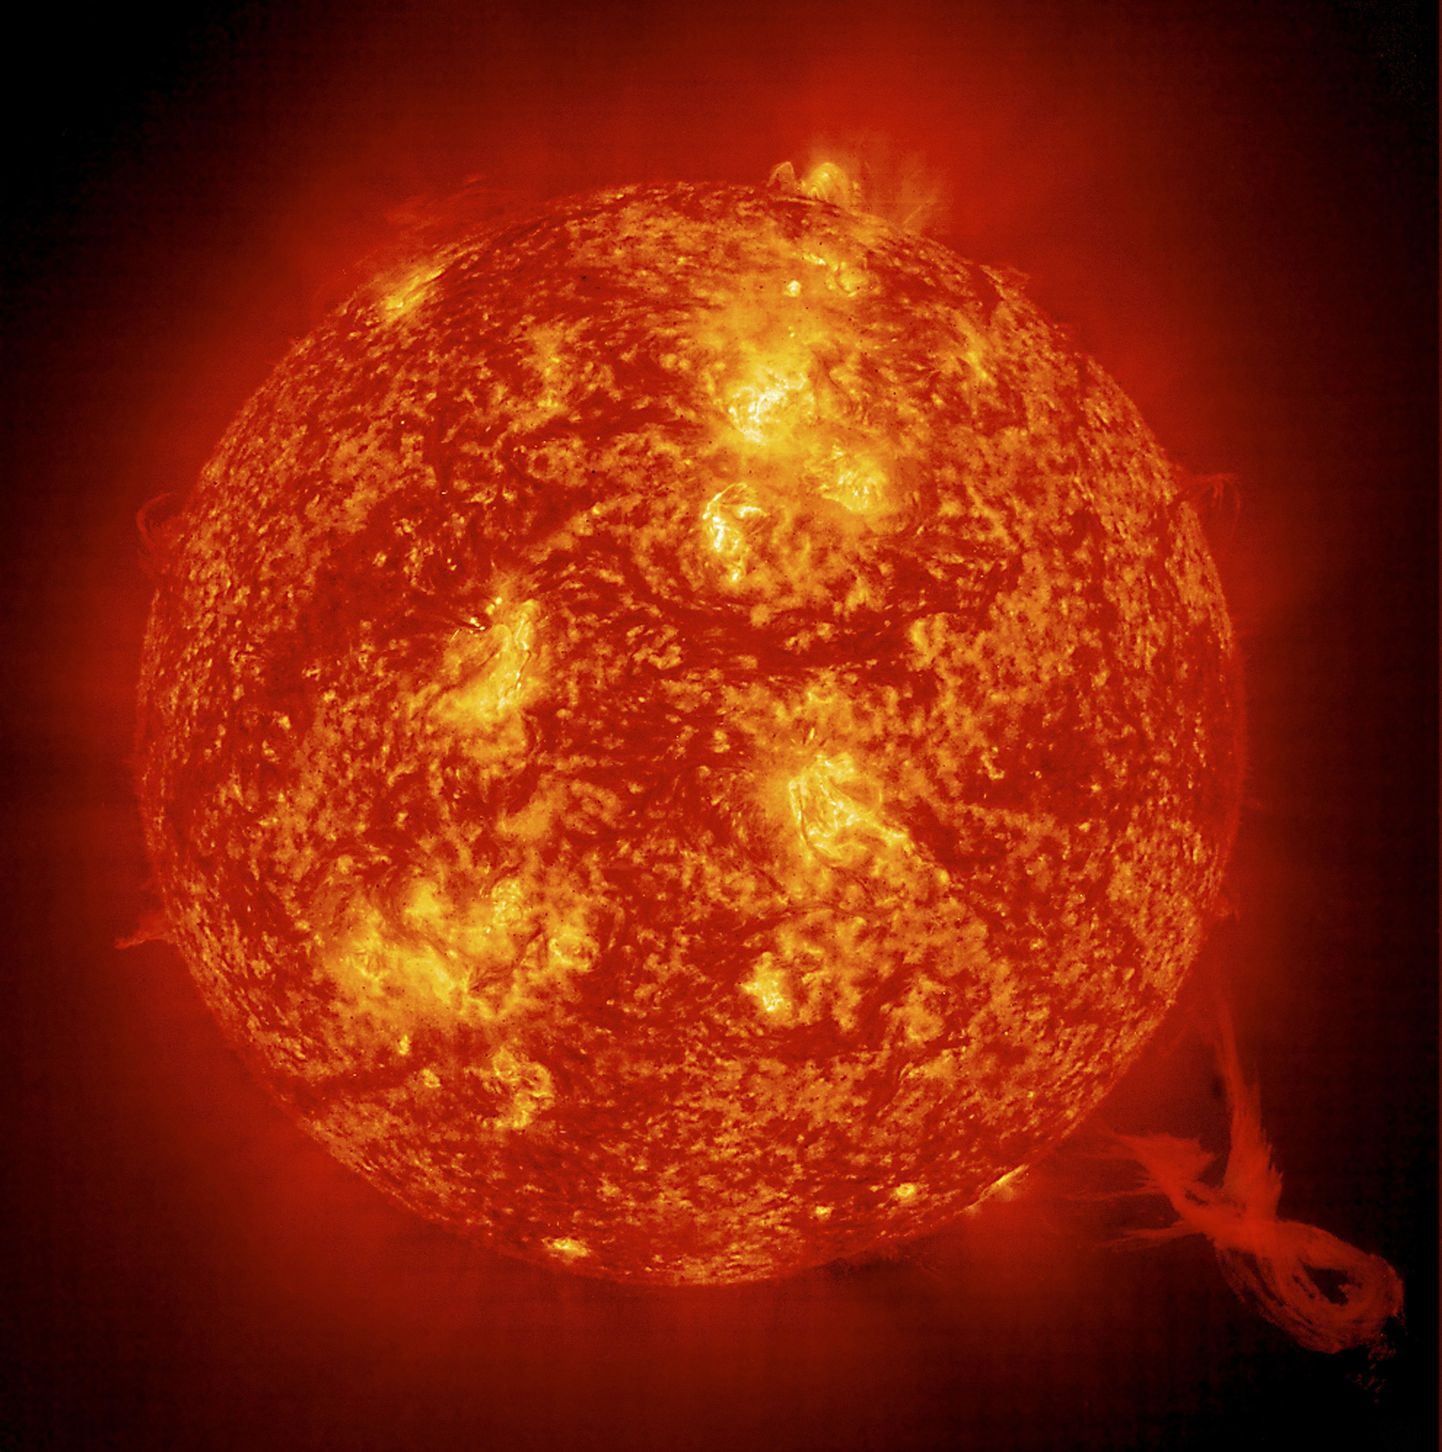 Фотография выбросов плазмы на солнце, сделанная учеными NASA.